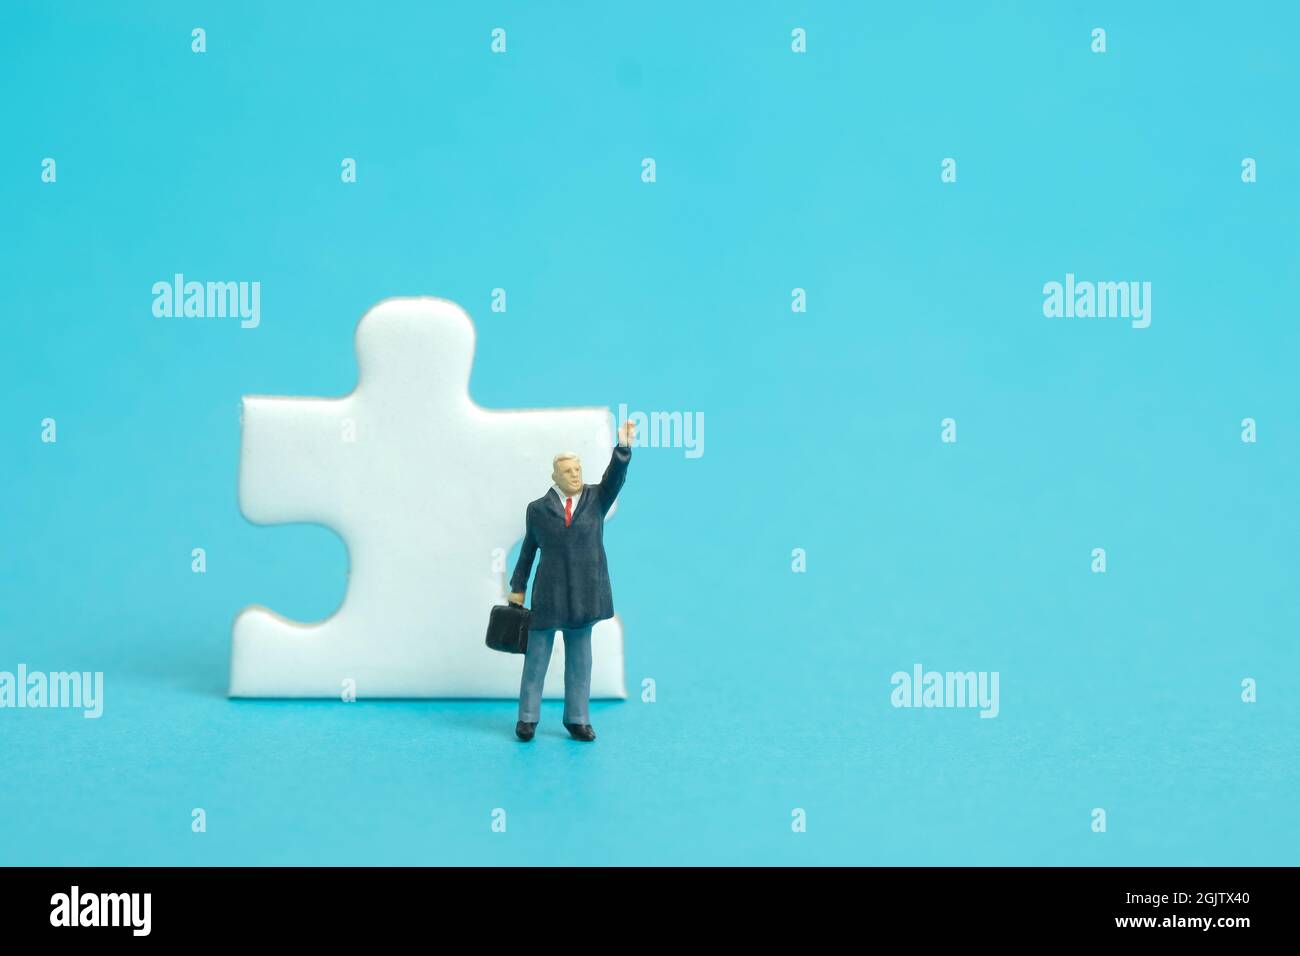 Miniatur Menschen Spielzeug Figur Fotografie. Ein Geschäftsmann, der vor einem Puzzle-Puzzleteil steht, während er seine Hand hebt. Isoliert auf blauem Hintergrund. Ima Stockfoto